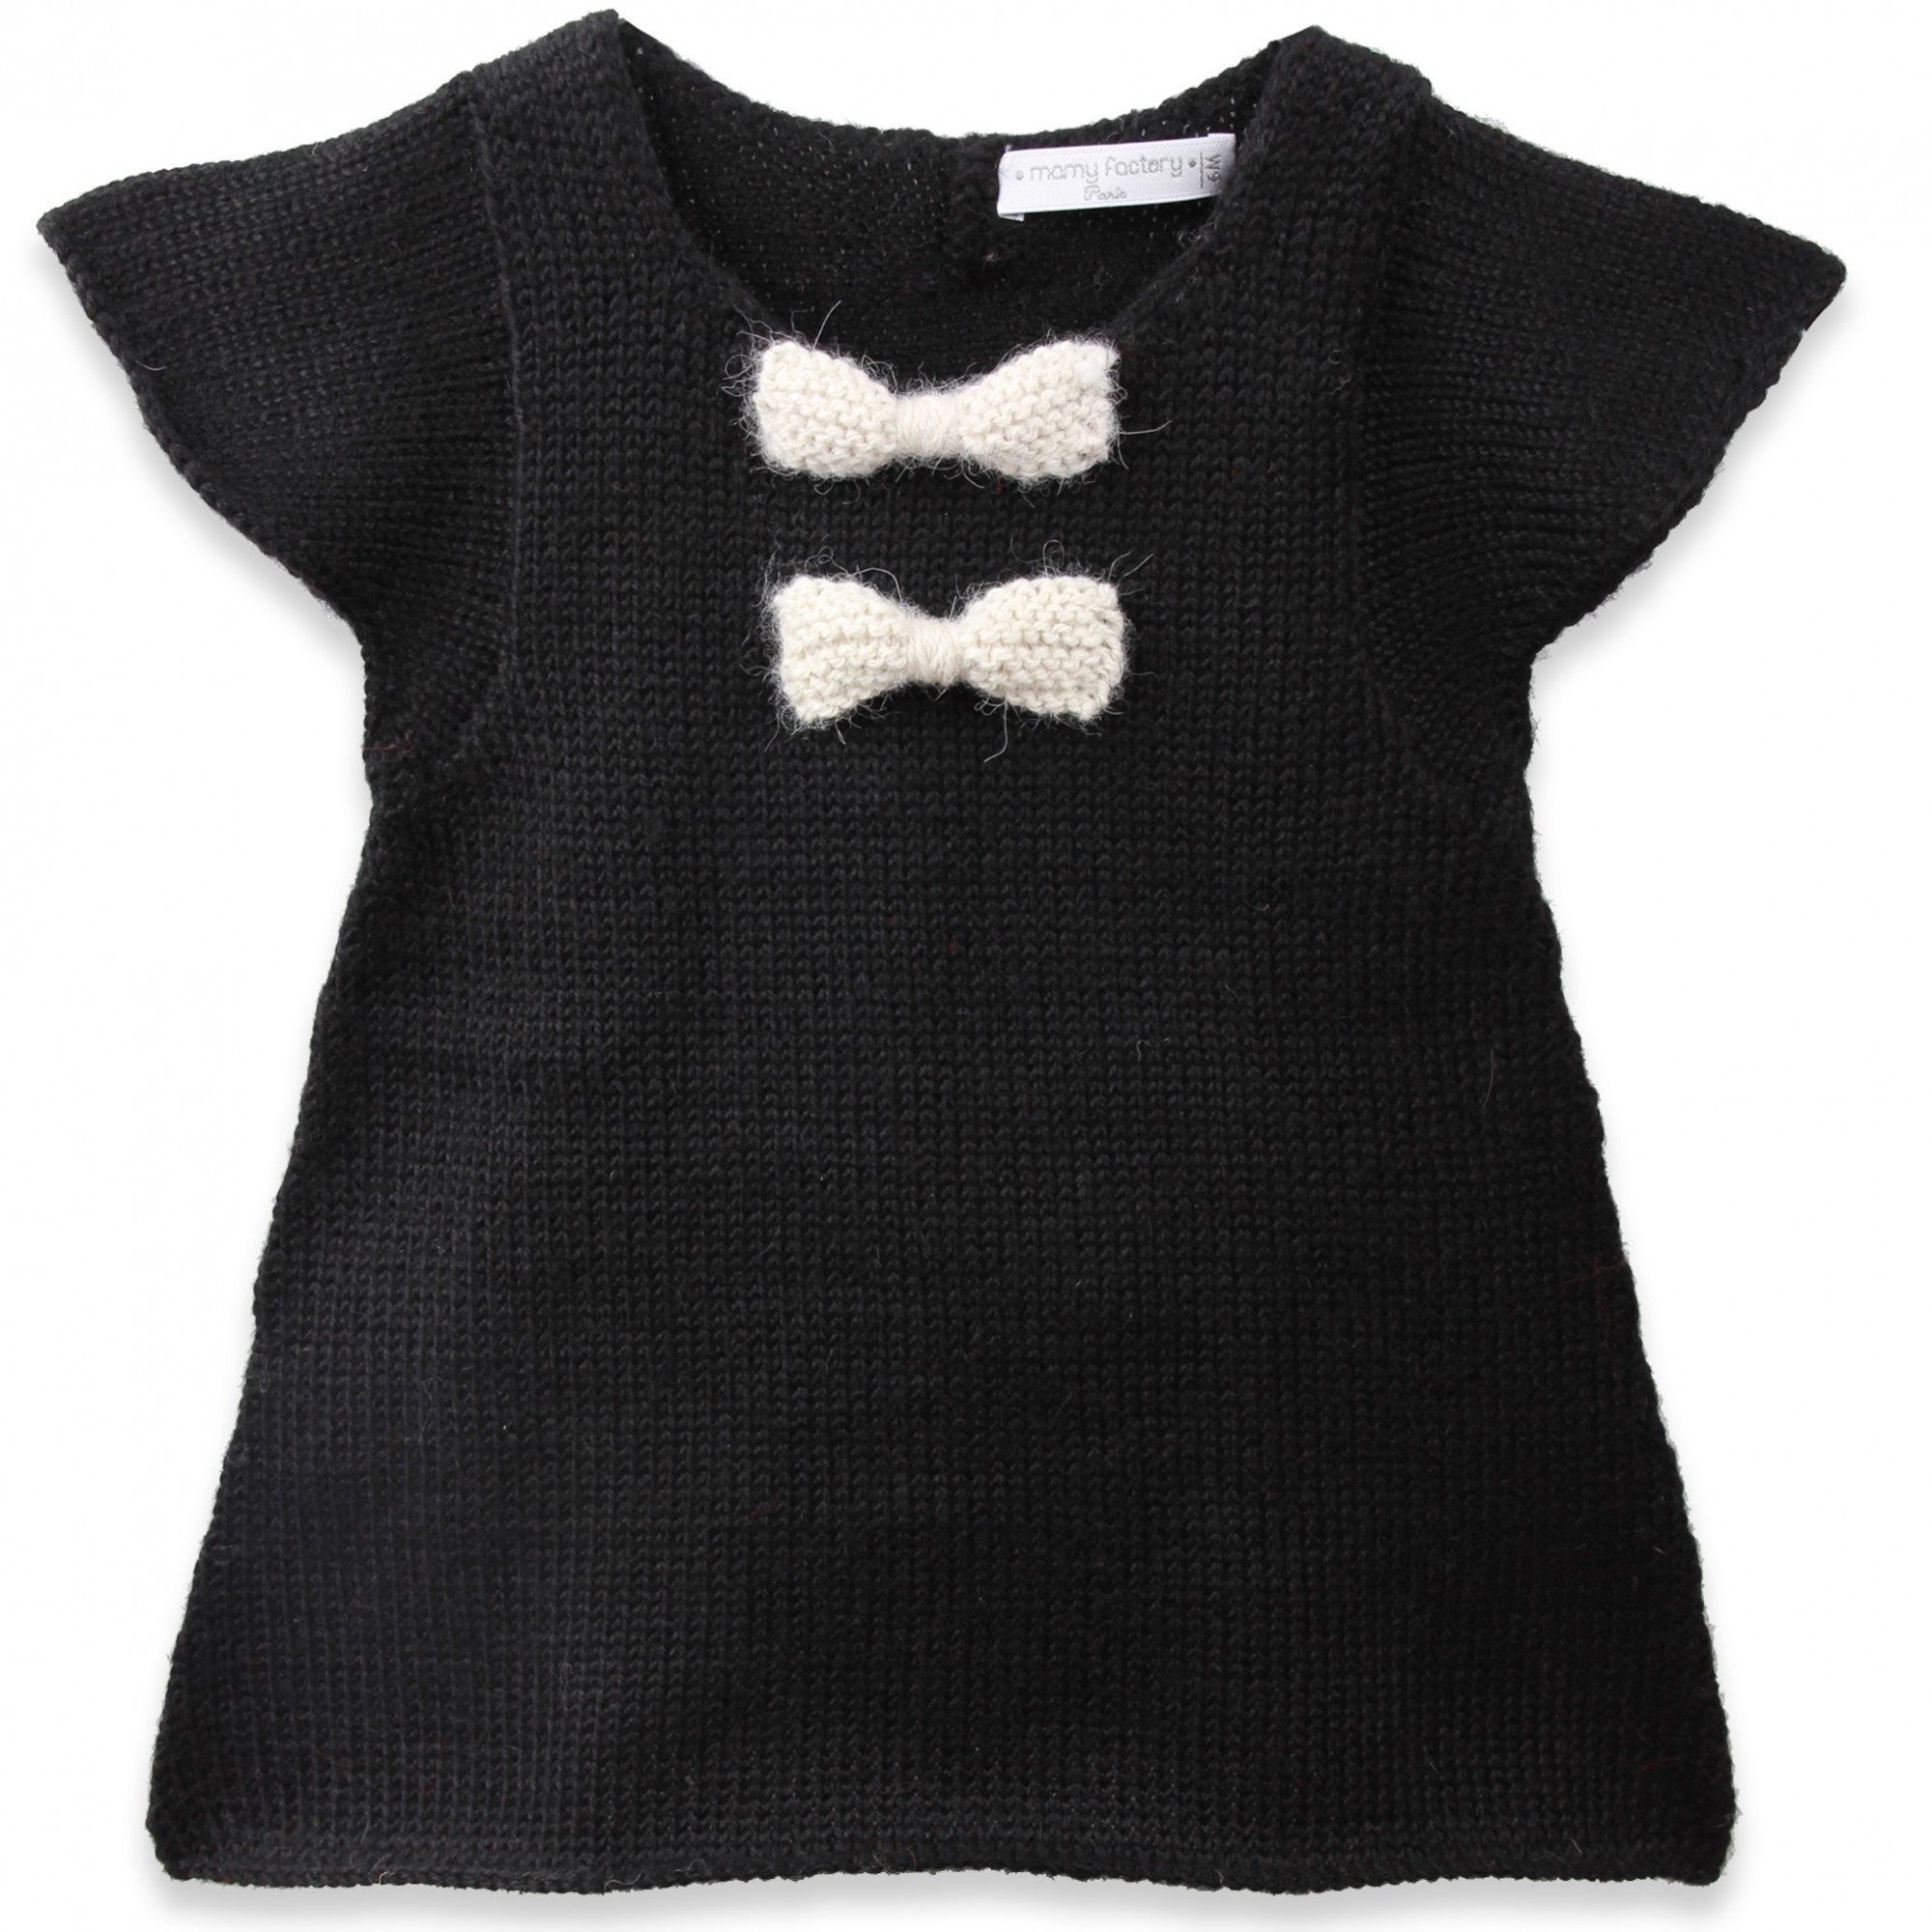 tricoter une robe en laine pour bebe